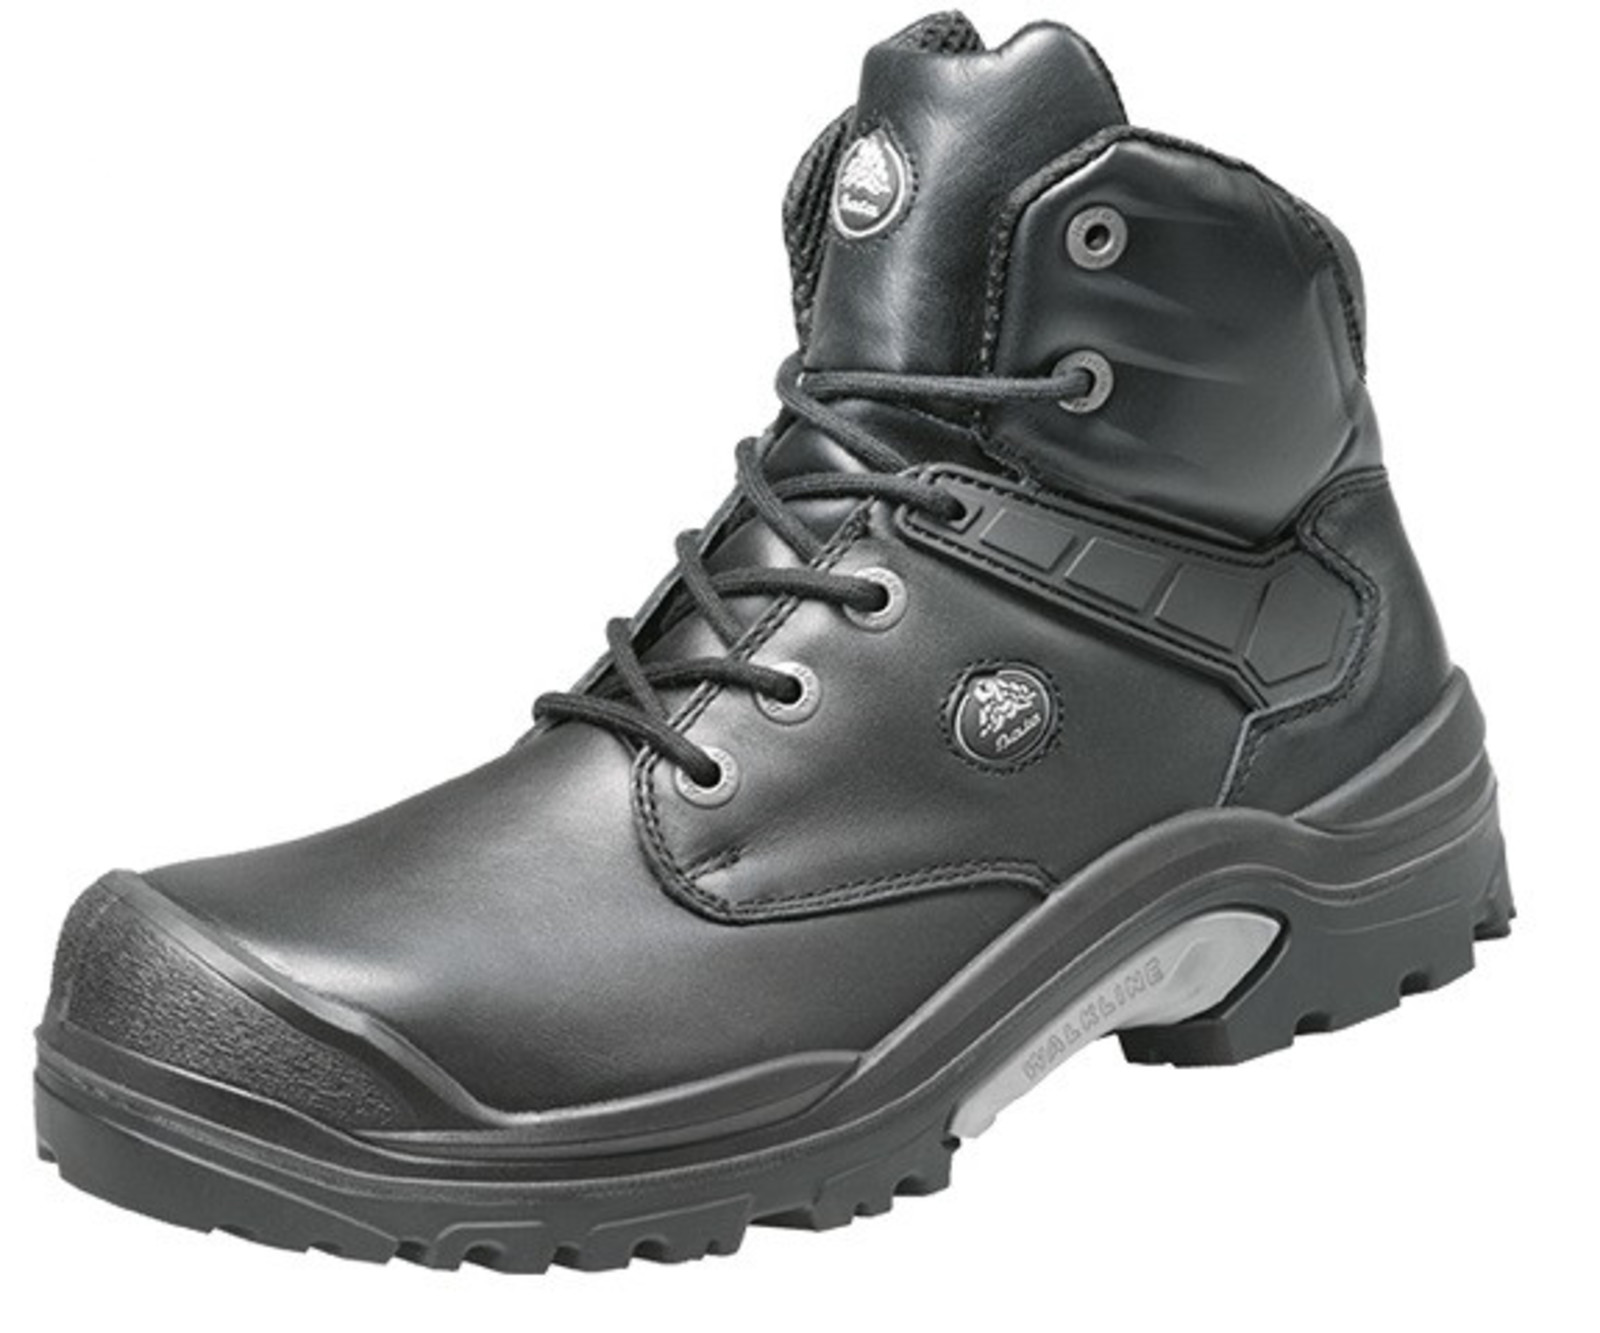 Bezpečnostná obuv Baťa PWR S3 - veľkosť: 40, farba: čierna